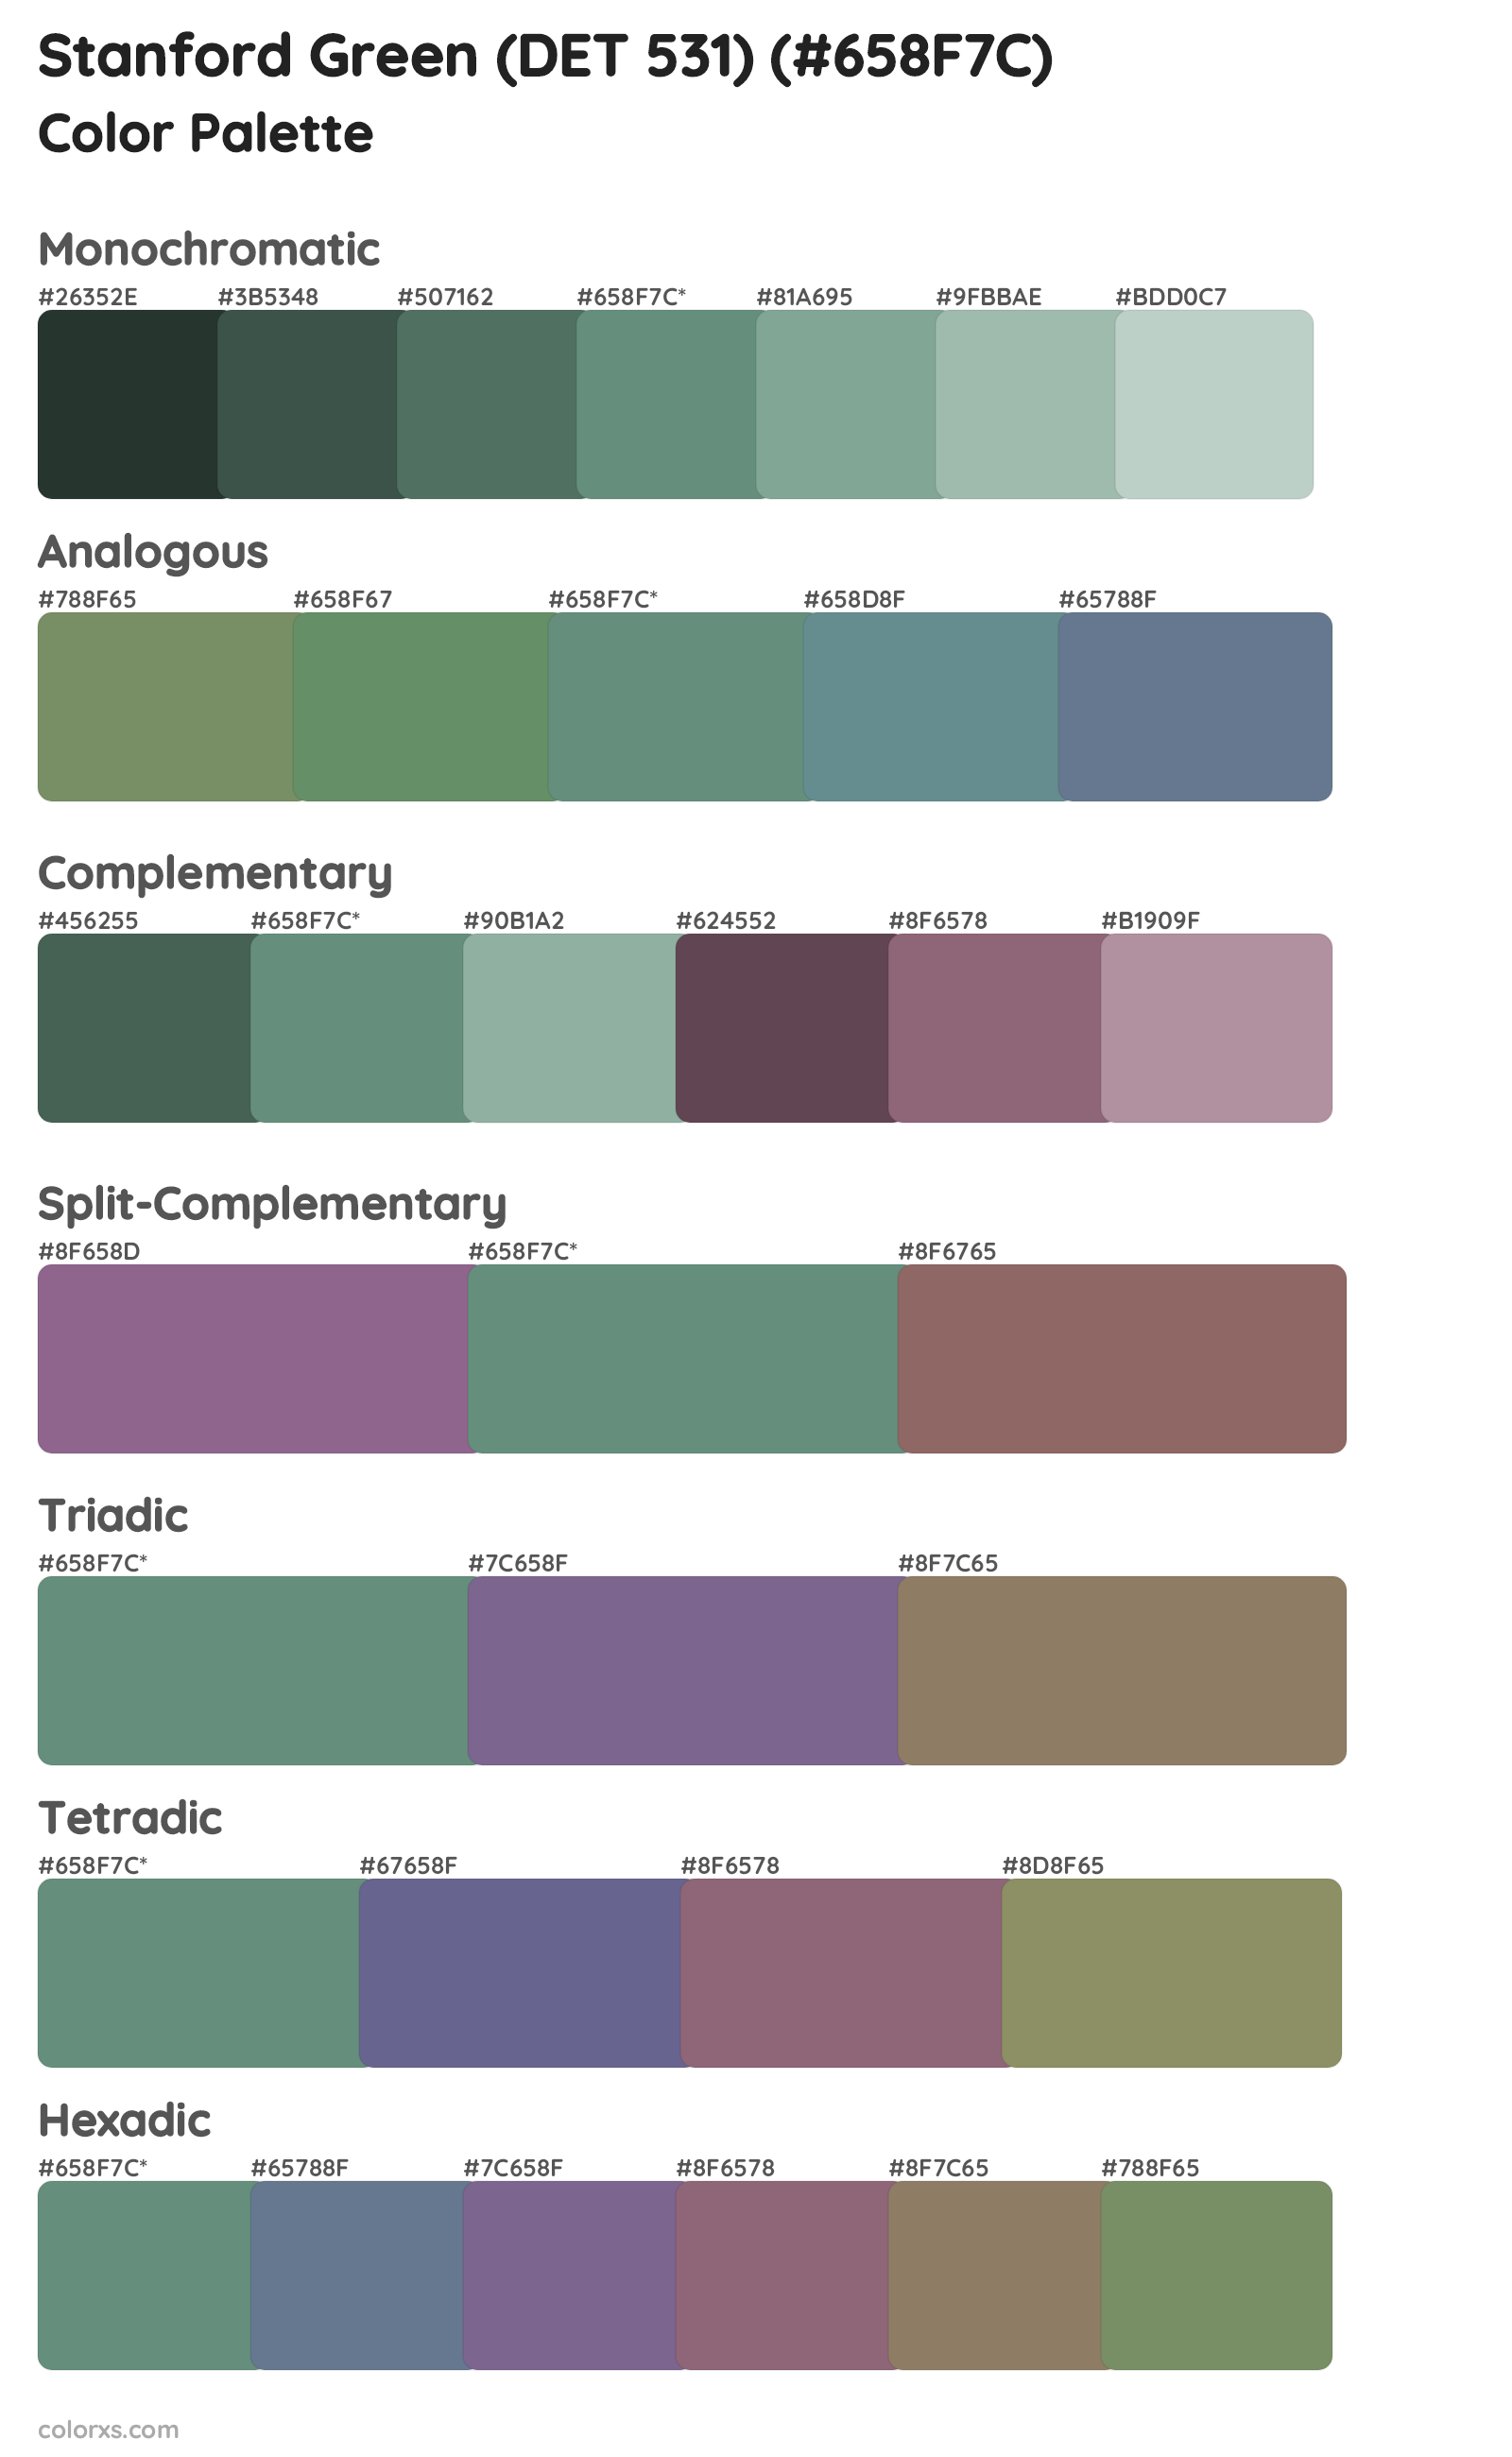 Stanford Green (DET 531) Color Scheme Palettes